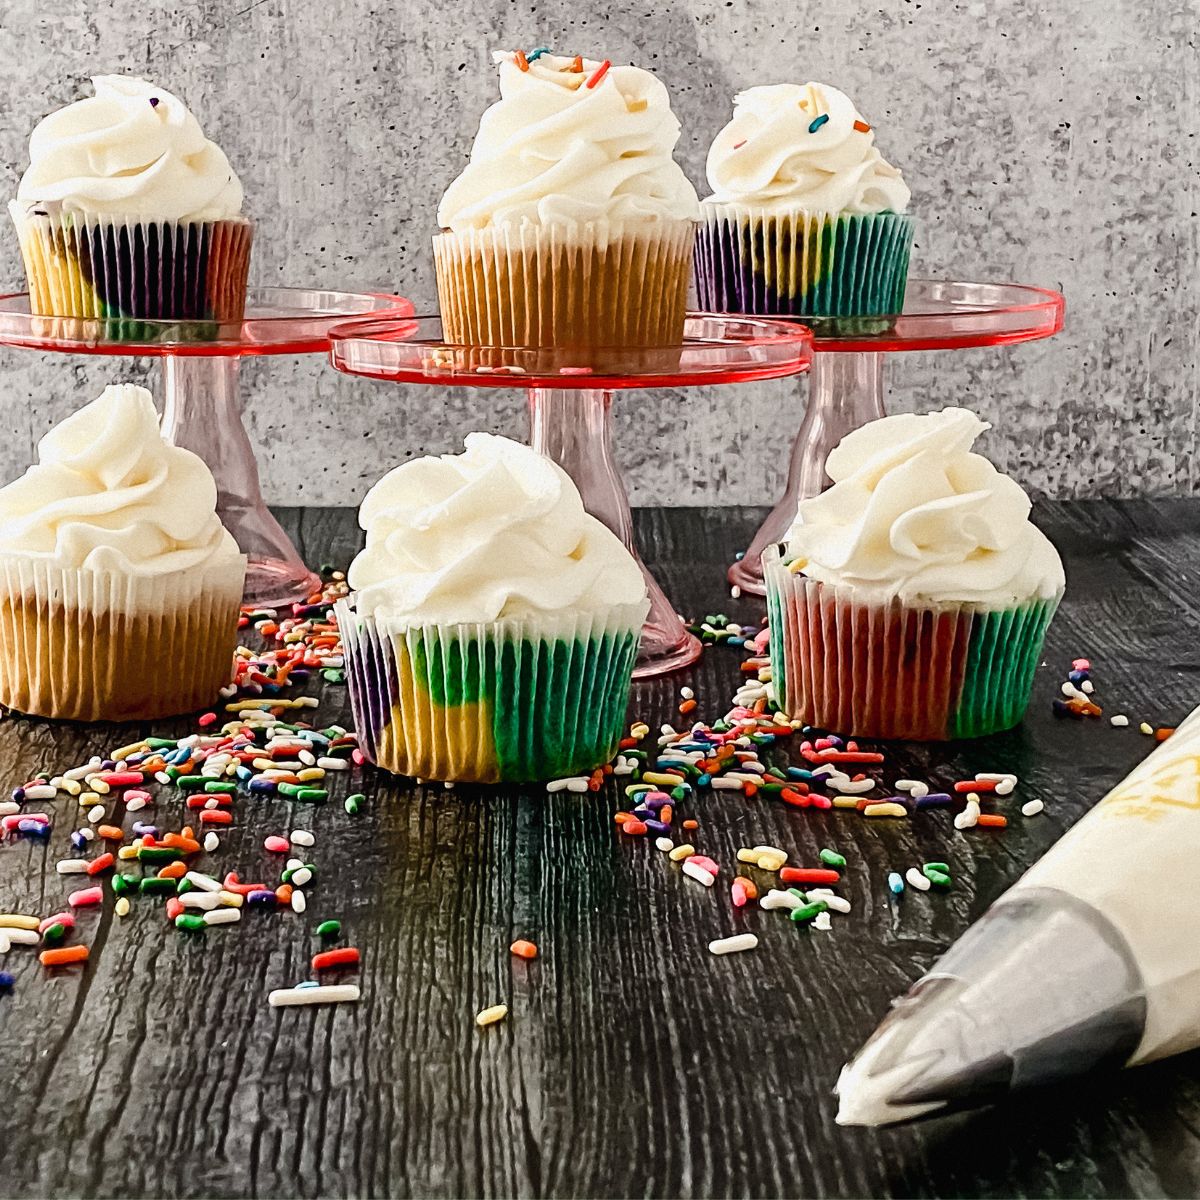 Vanilla Cupcake - Nordic Ware, Recipe